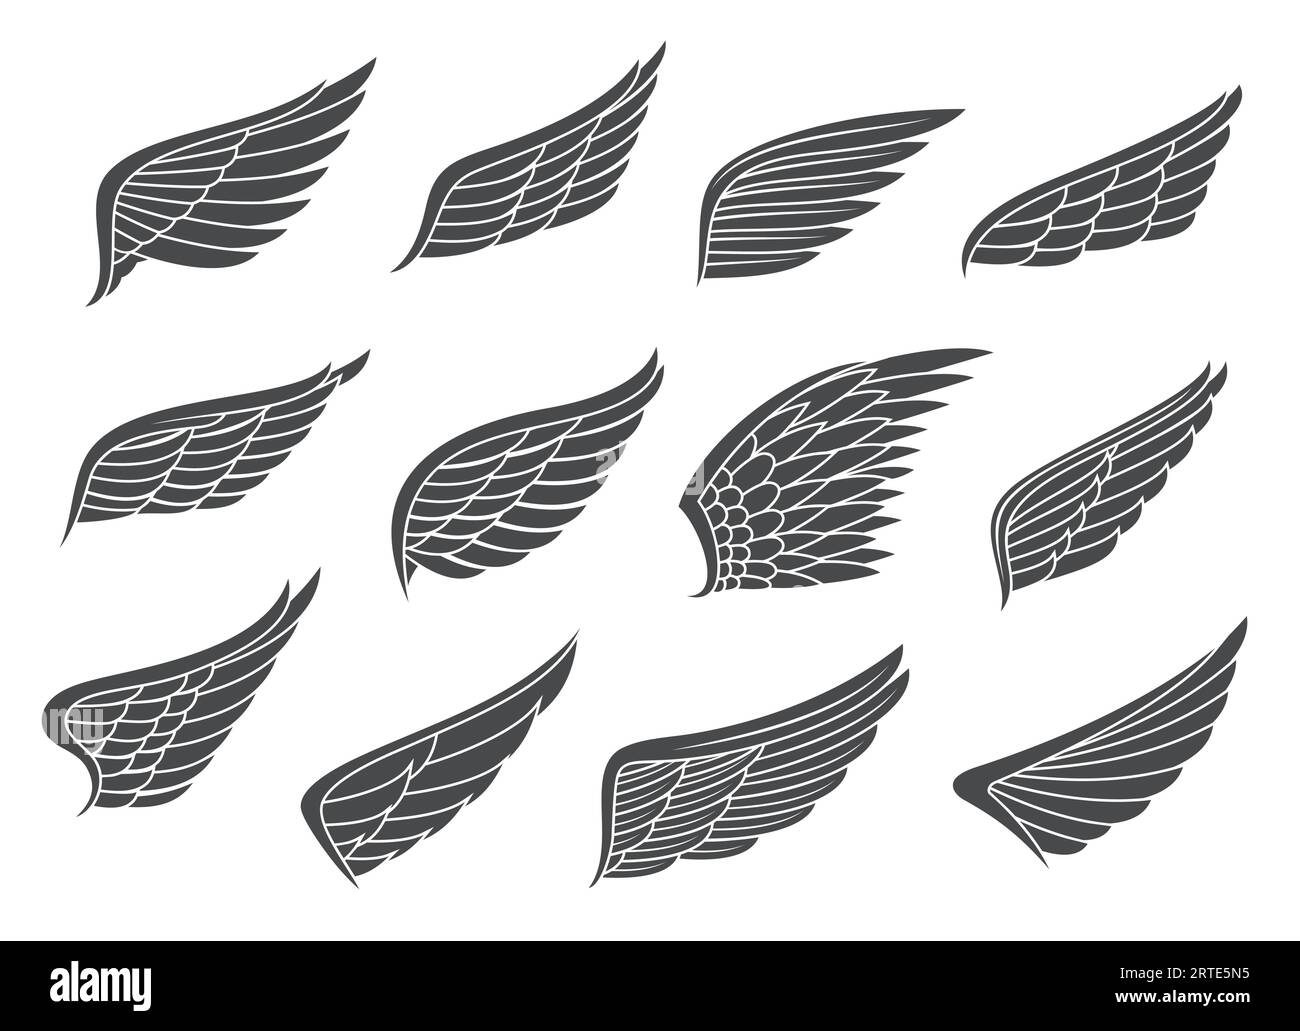 Tatouage d'aile. Ange, oiseau aigle déployant des ailes avec des plumes. Les ailes noires de faucon, de faucon ou de pigeon encadrent des emblèmes vectoriels, des symboles isolés du ciel et de la liberté, des icônes vintage Illustration de Vecteur